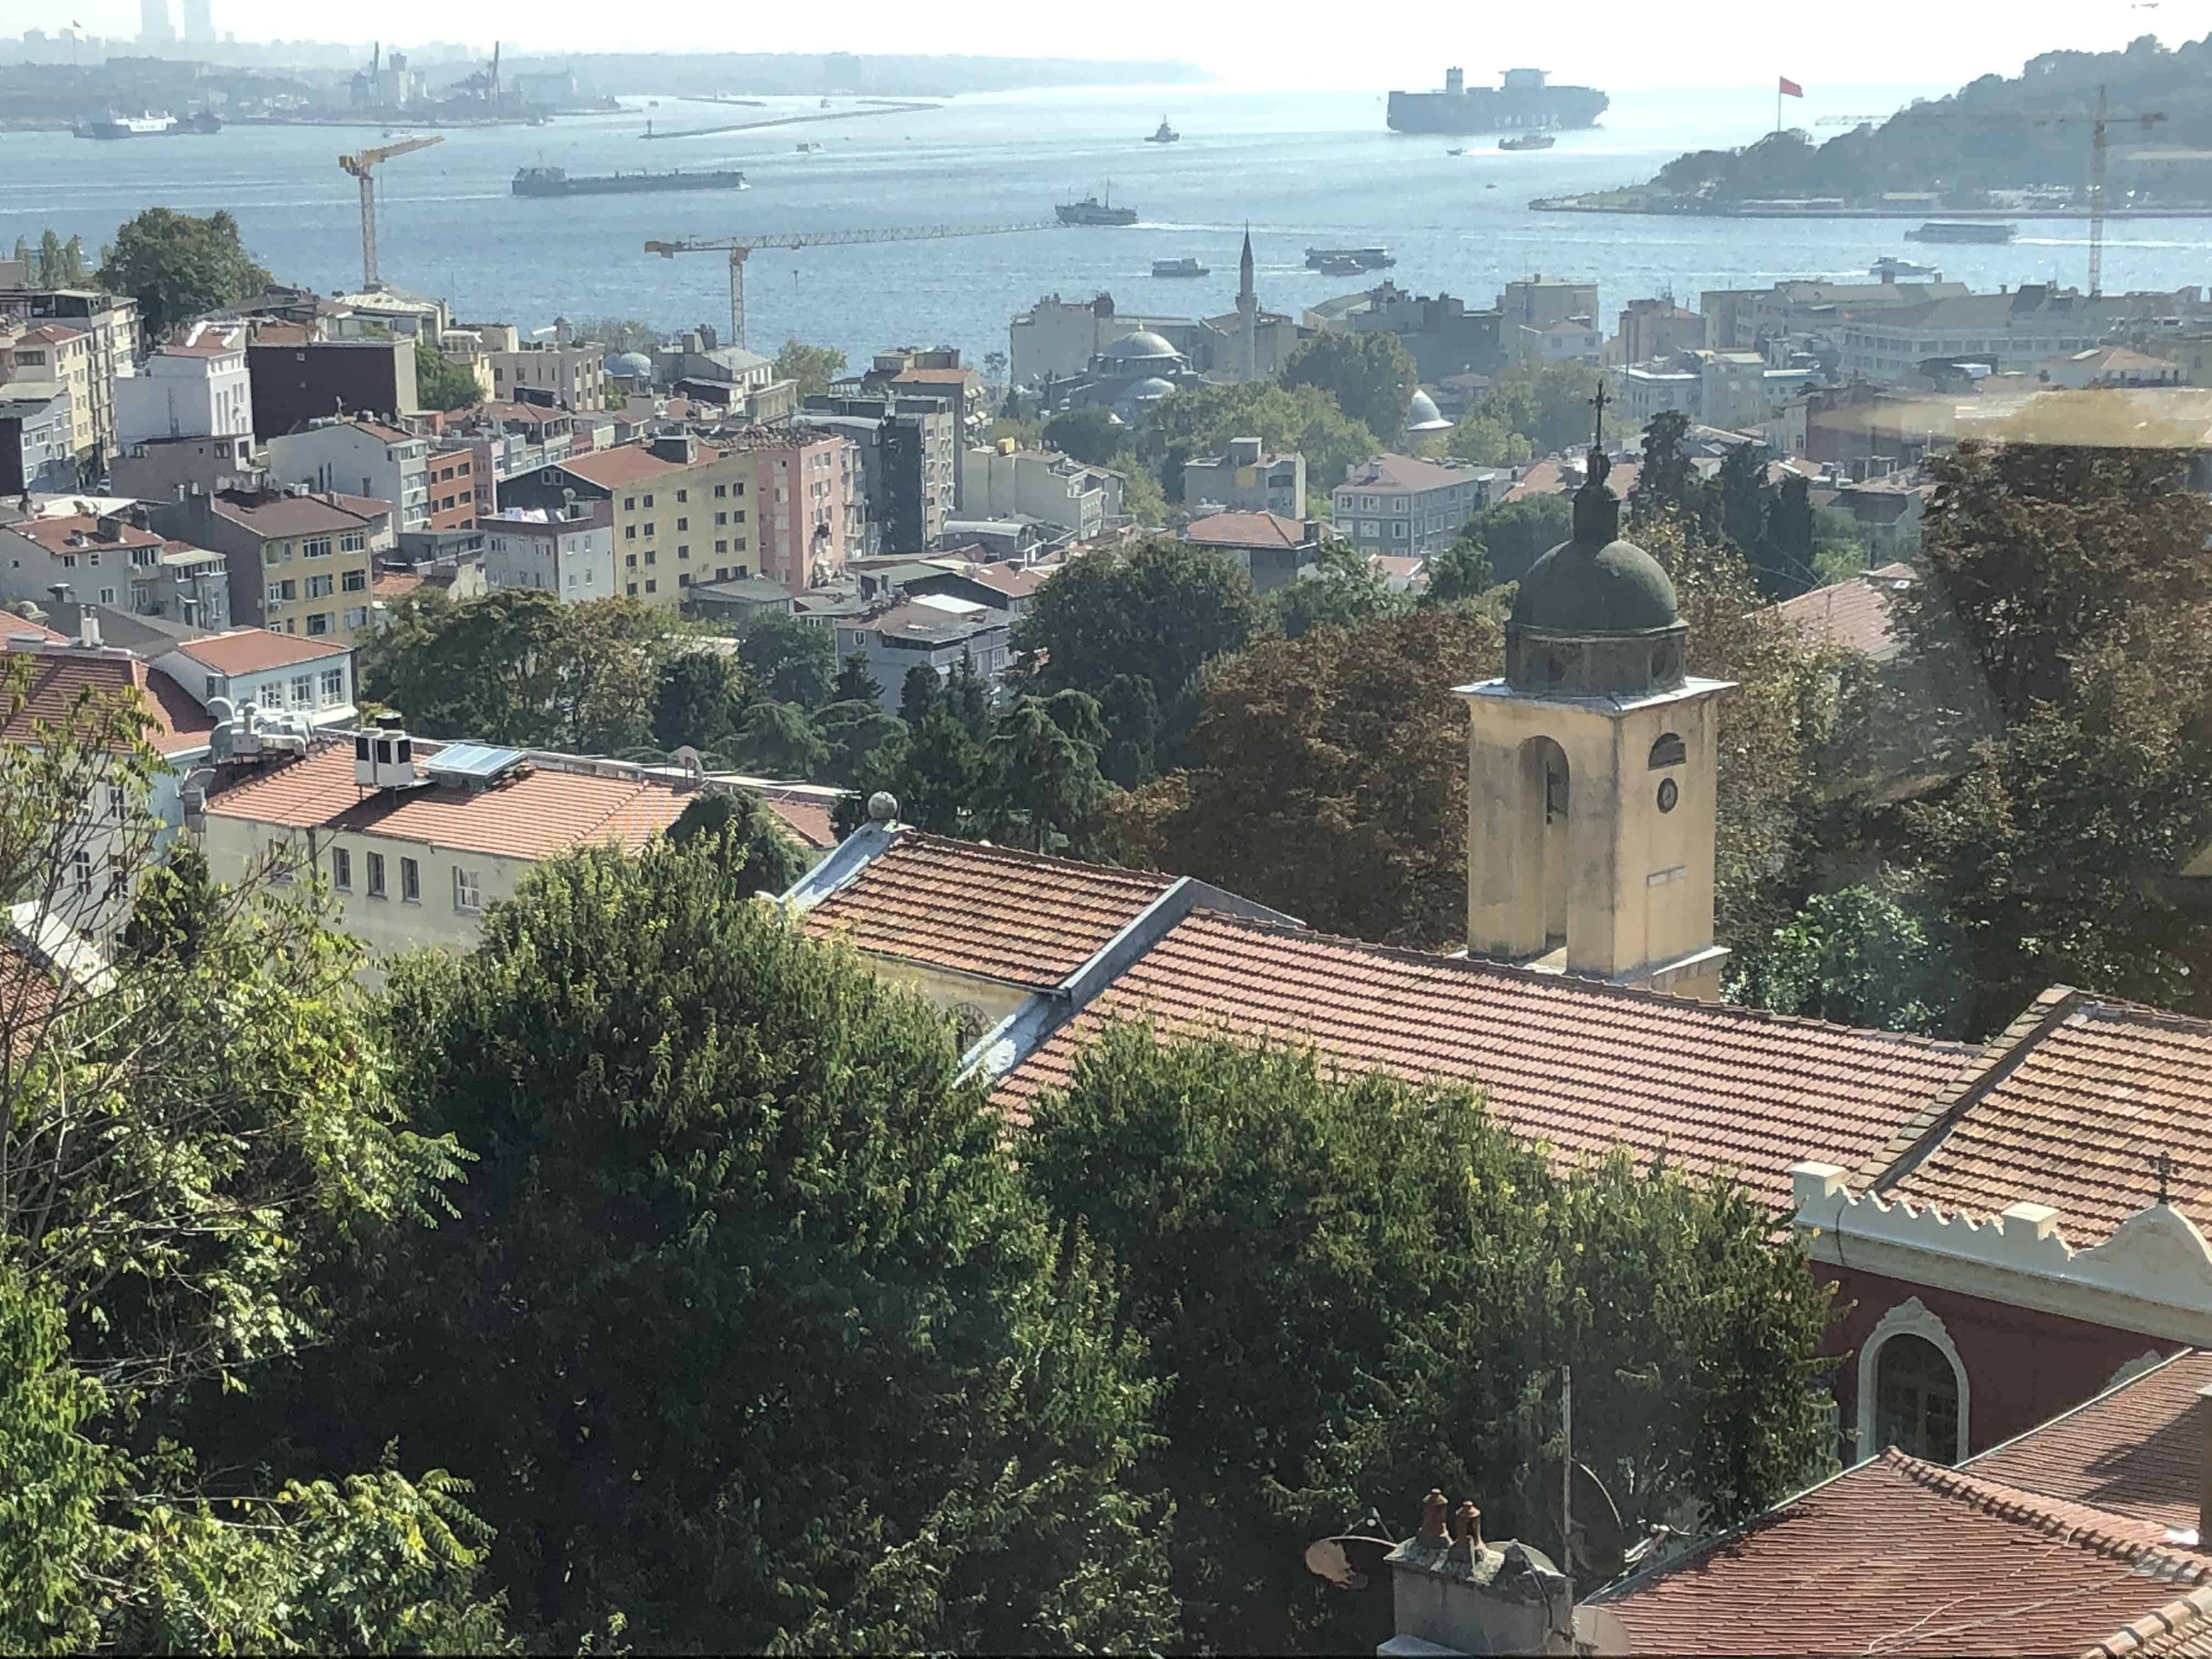 Saint-Louis-des-Français in Istanbul, Turkey